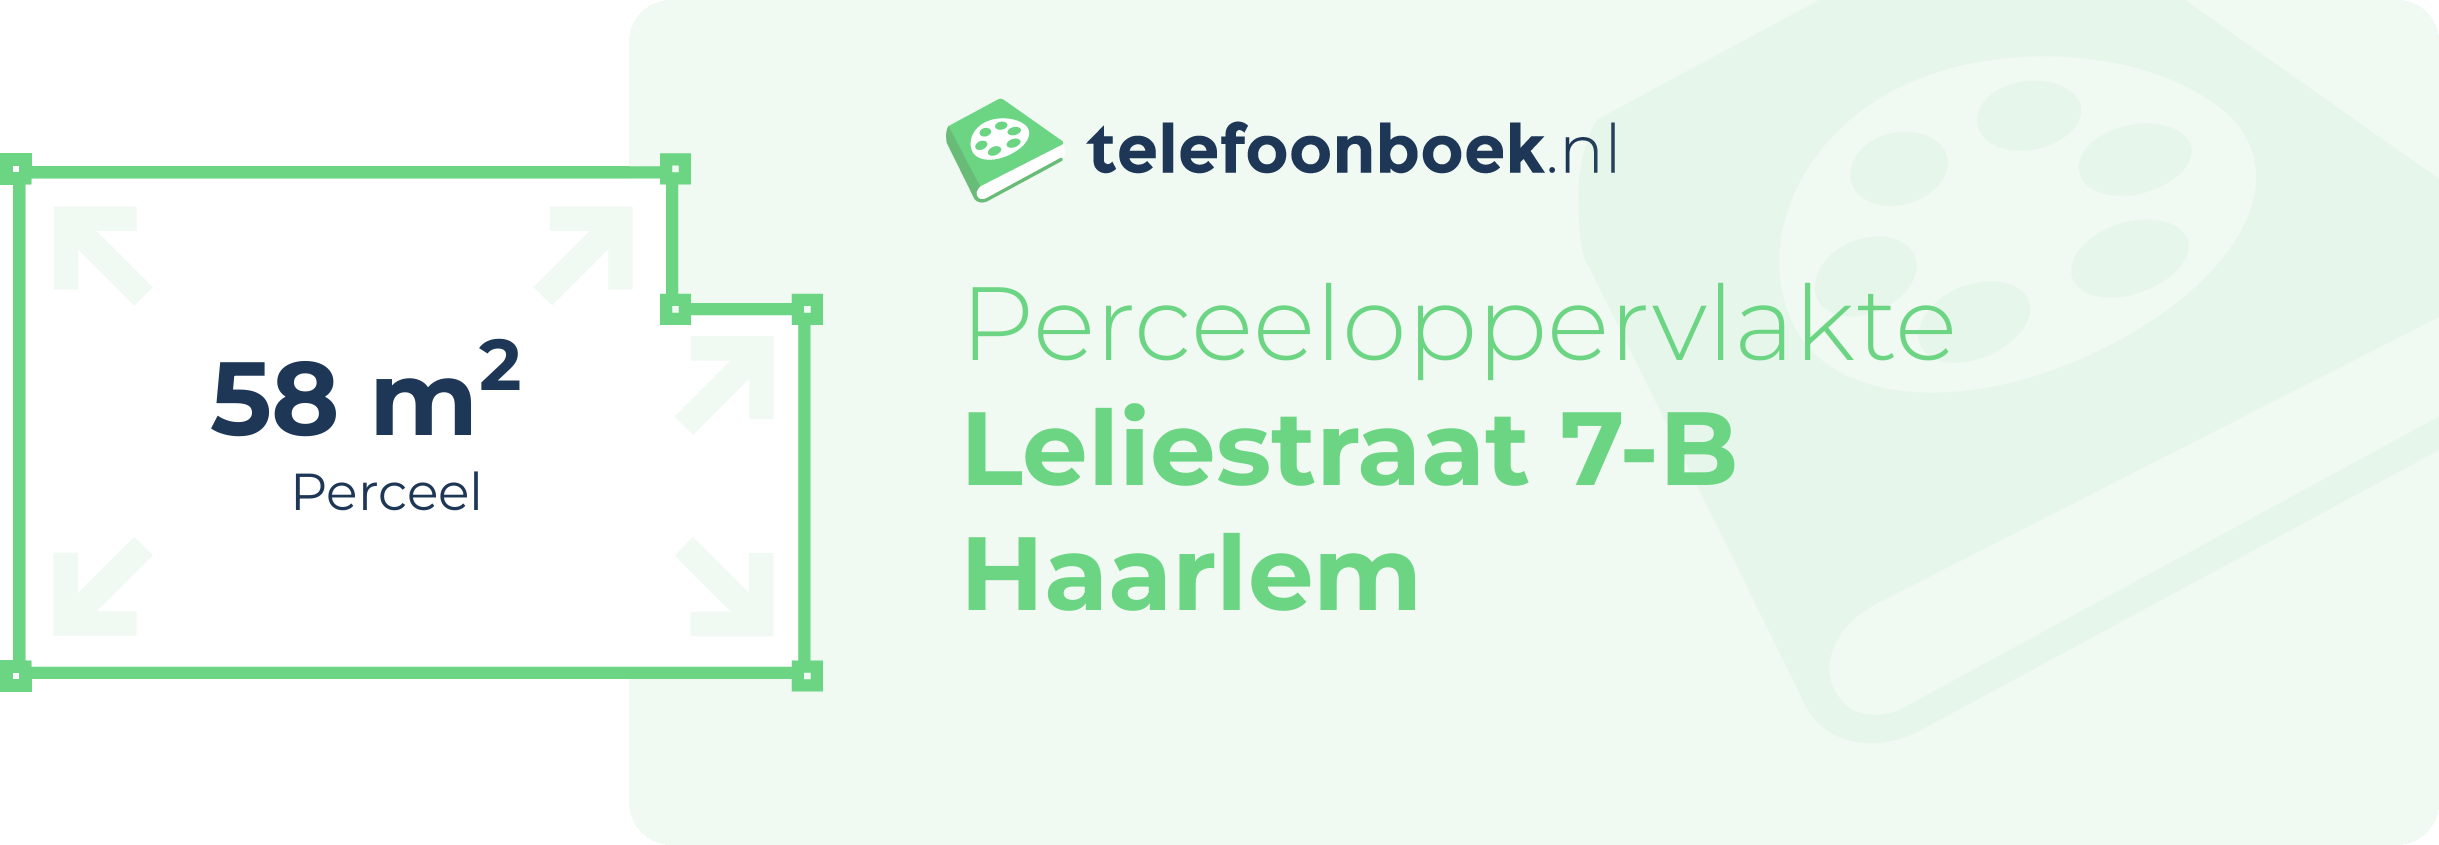 Perceeloppervlakte Leliestraat 7-B Haarlem